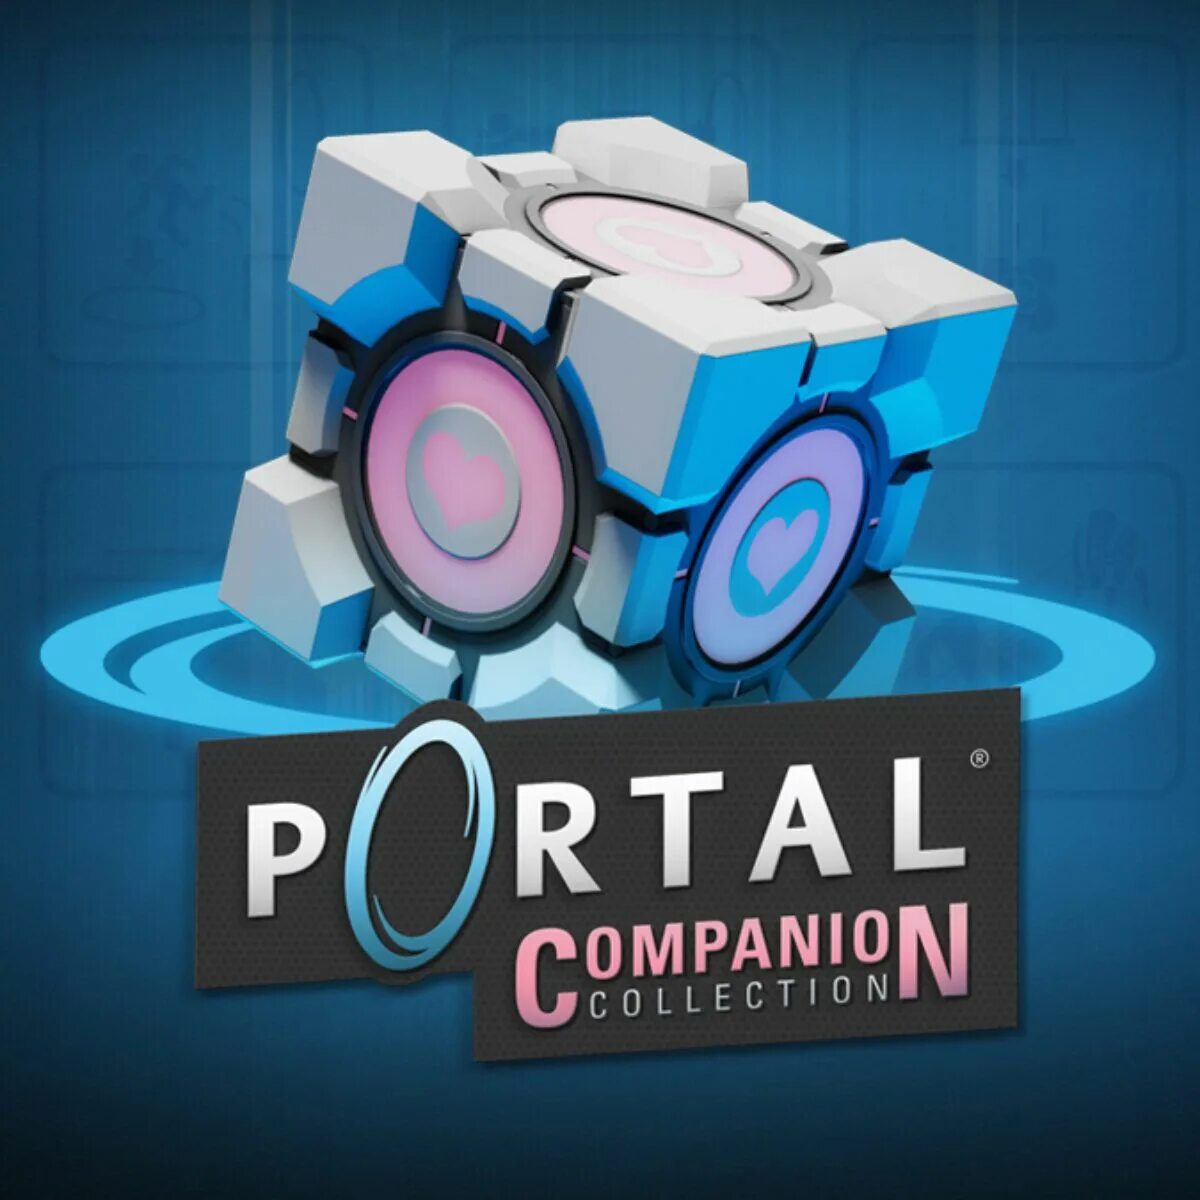 Portal Companion collection Box. Portal collection